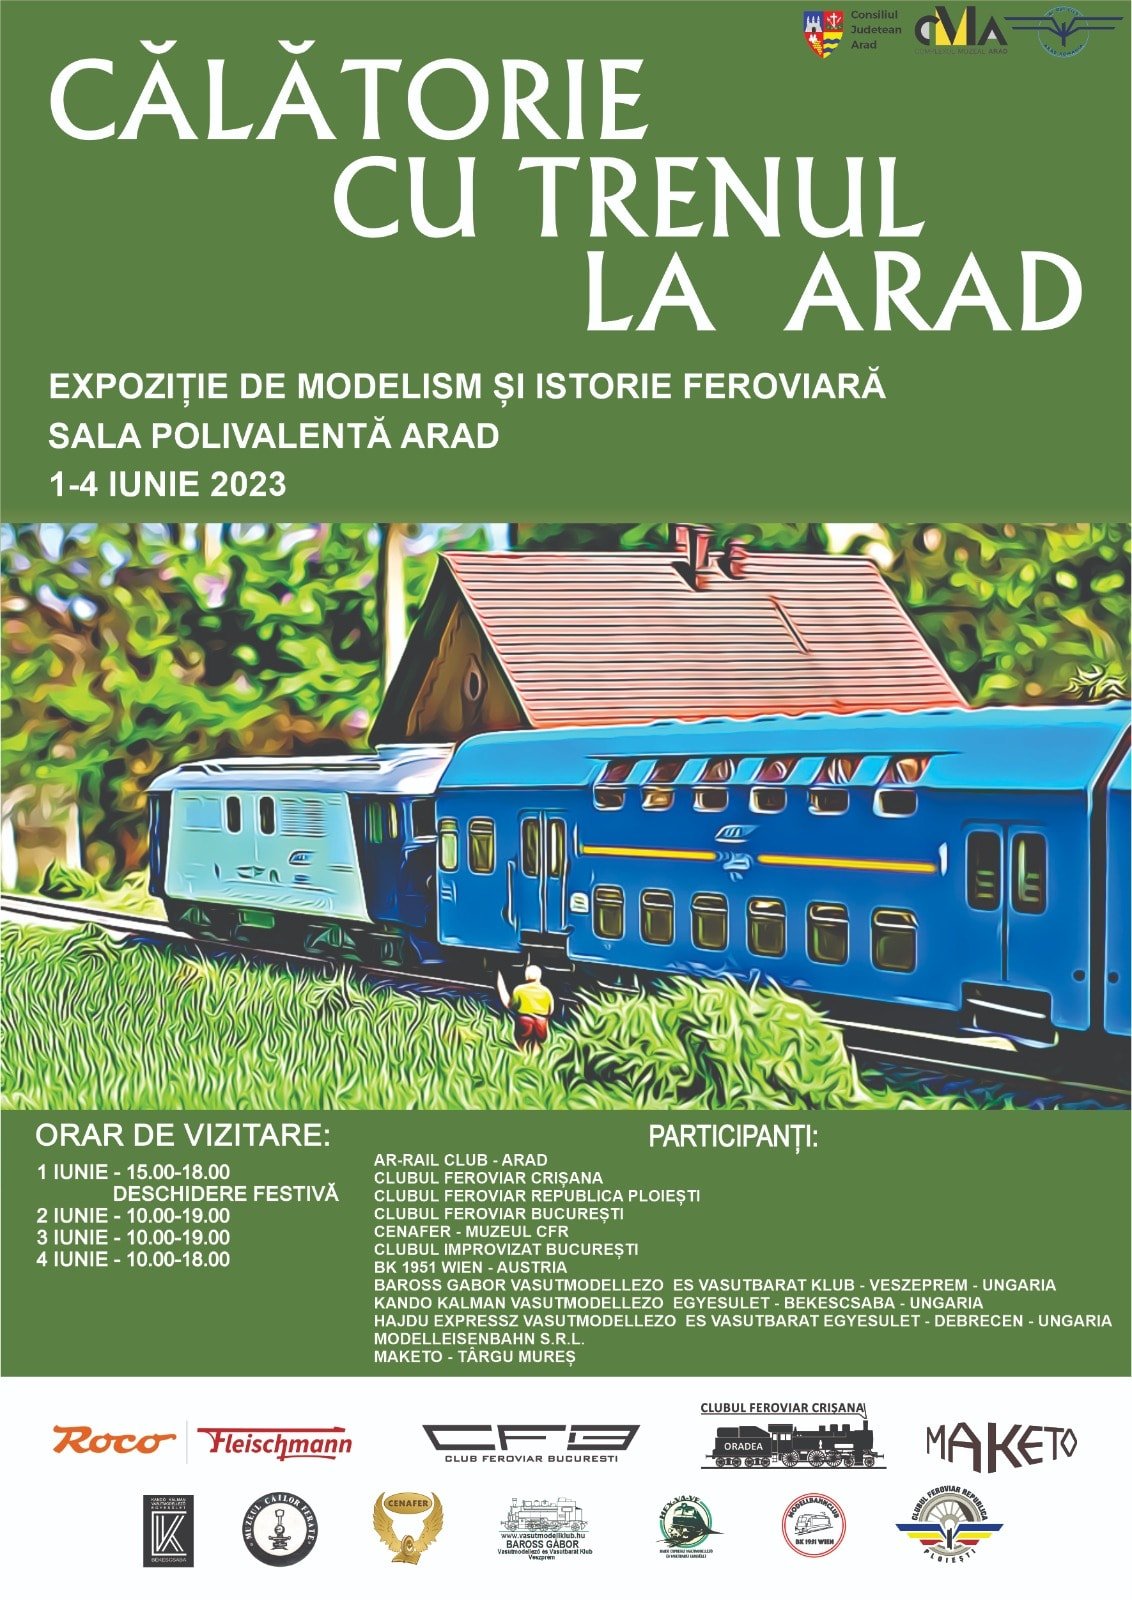 Complexul Muzeal Arad: Expoziție de modelism și istorie feroviară ”Călătorie cu trenul la Arad”, 1-4 iunie, Sala Polivalentă Arad